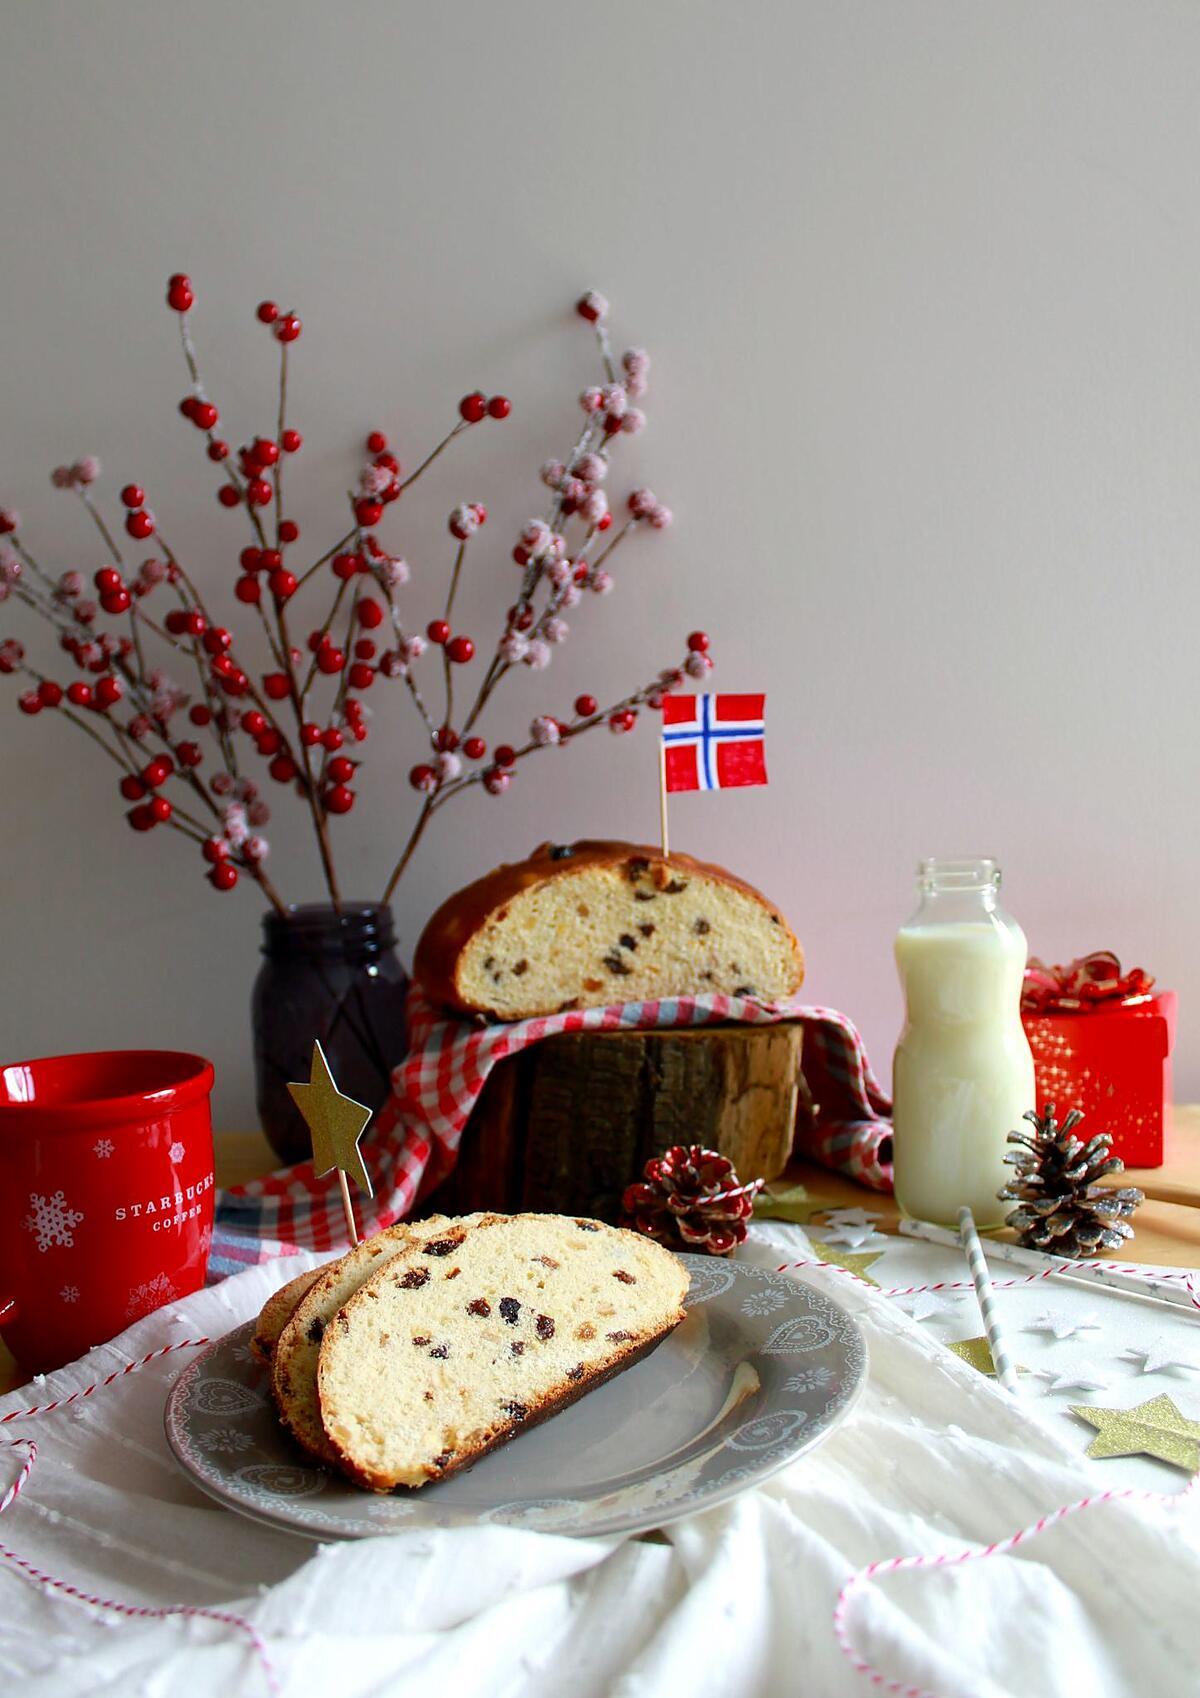 recette Julekake, "gâteau de Noël" brioché norvégien aux fruits secs et confits, parfumé à la cardamome